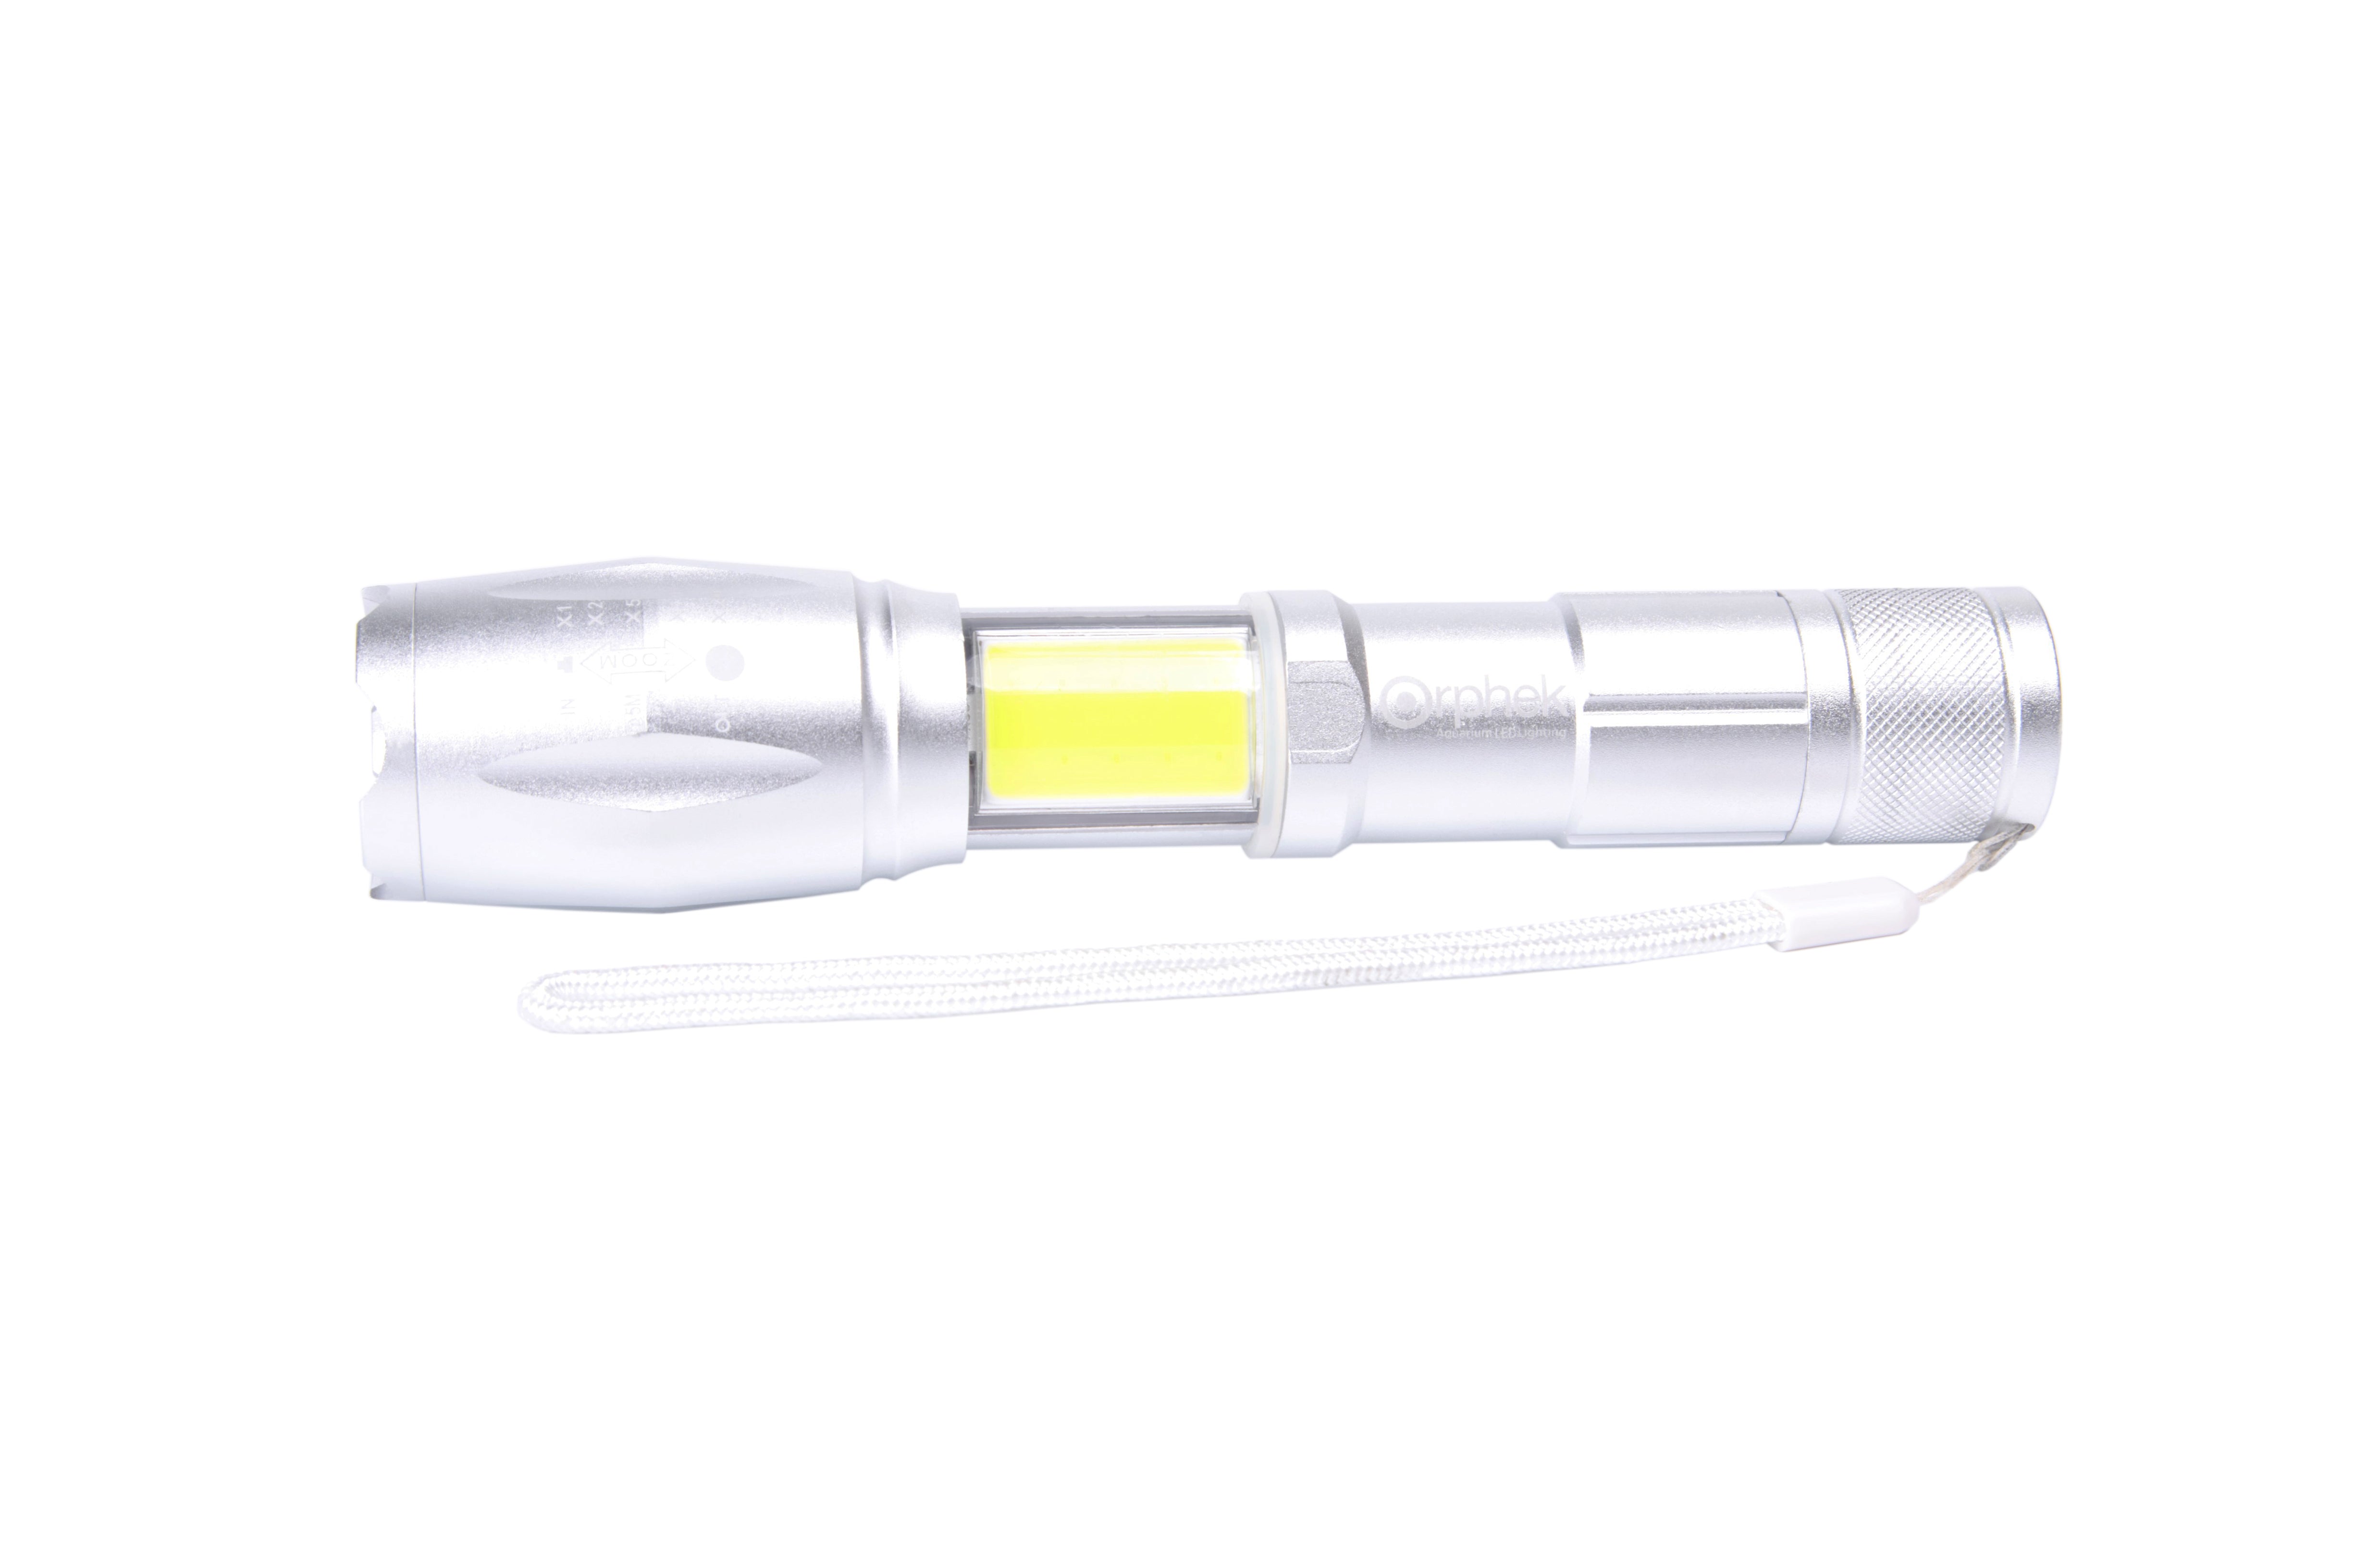 Orphek-Taschenlampen-Kombination - Azurelite 2 Blue LED / Fox Fire White LED Super Bright